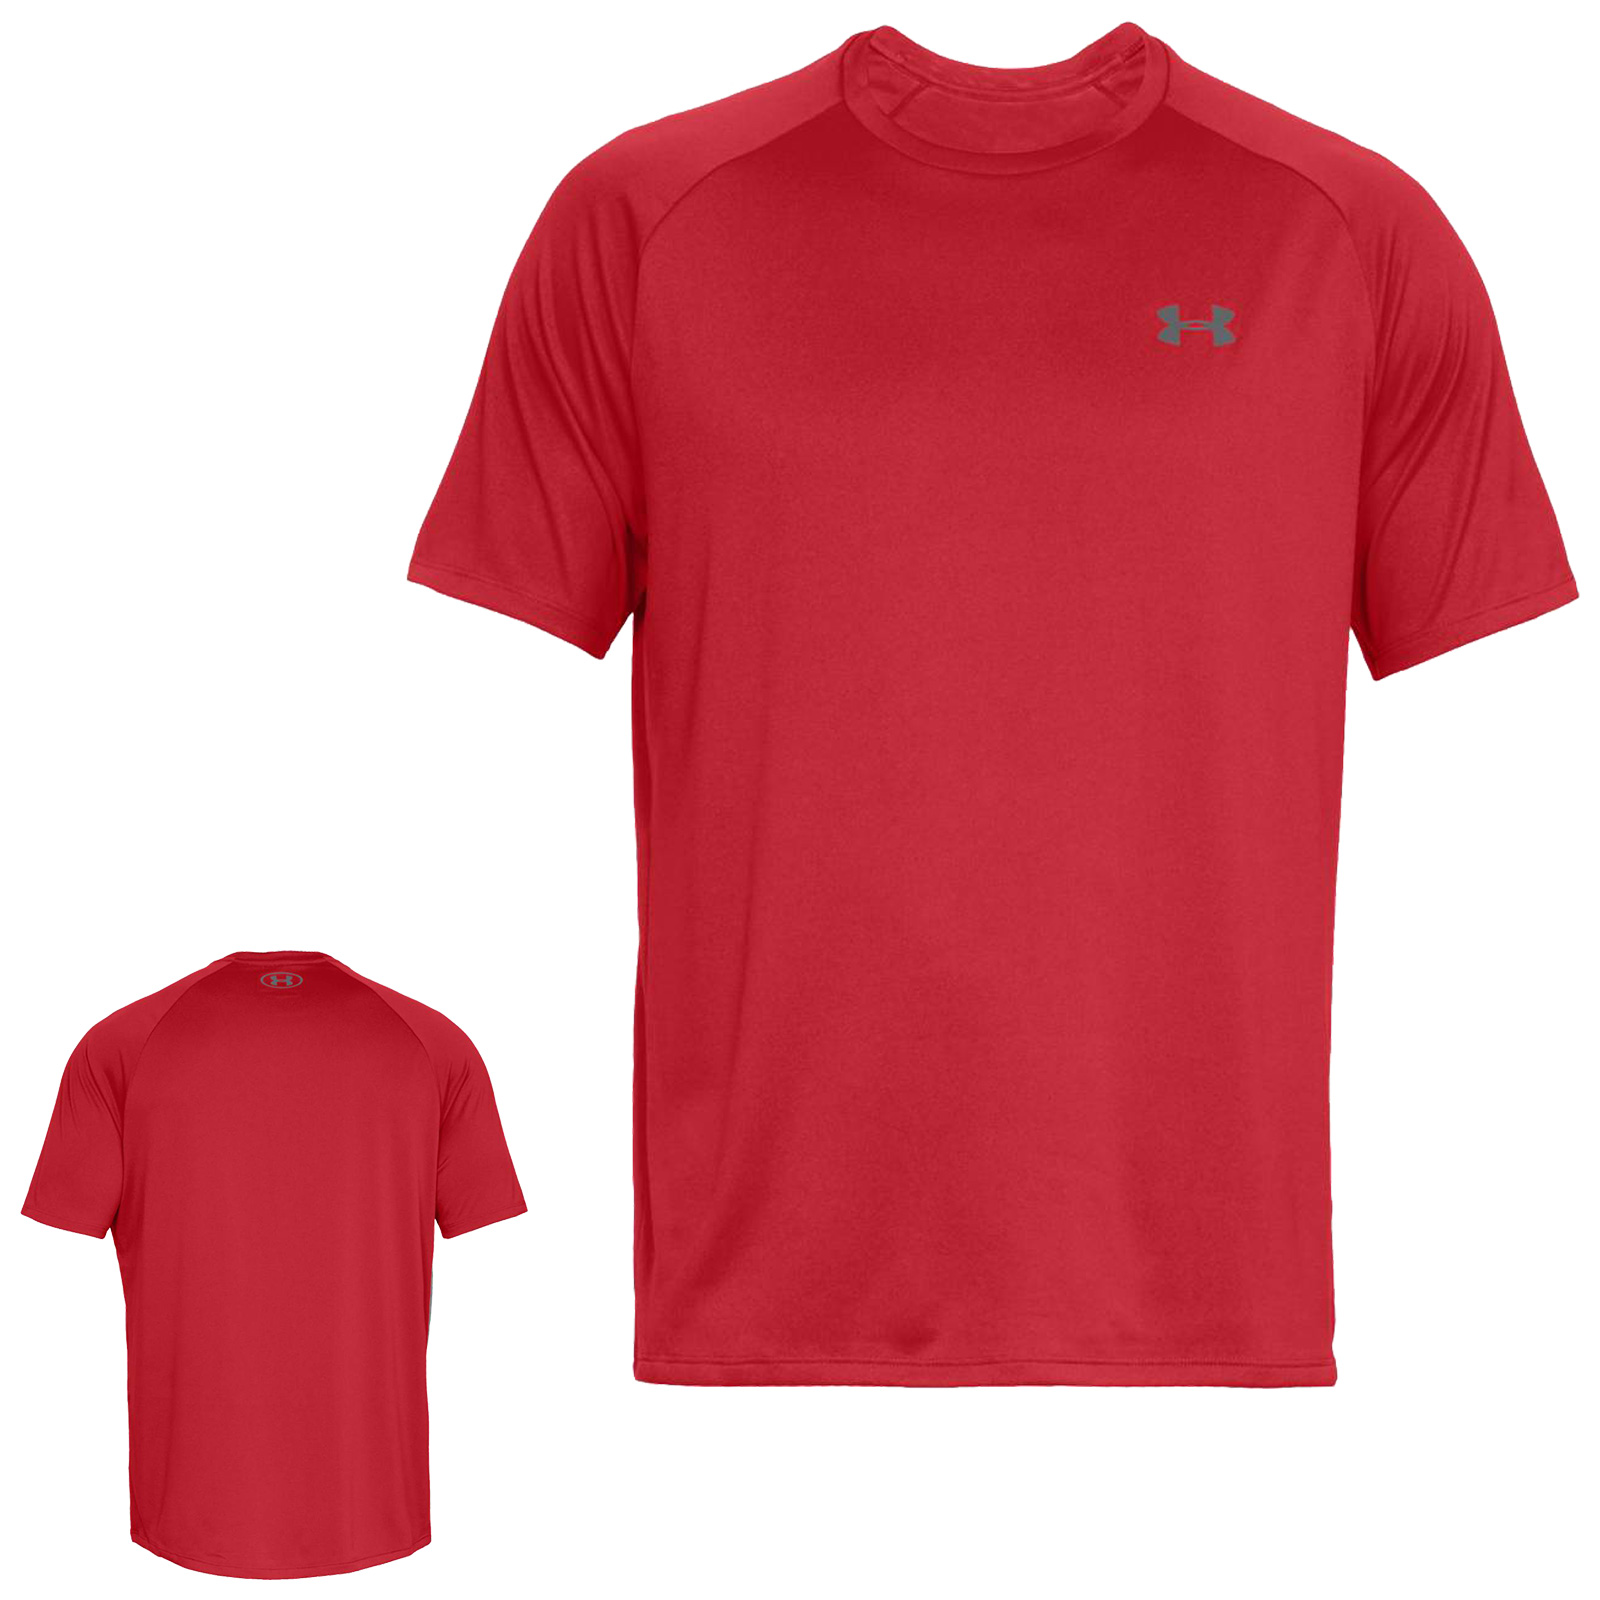 Under Armour Homme Tech 2.0 à encolure ras-du-cou à manches courtes Gym Fitness T-shirt Tee Top